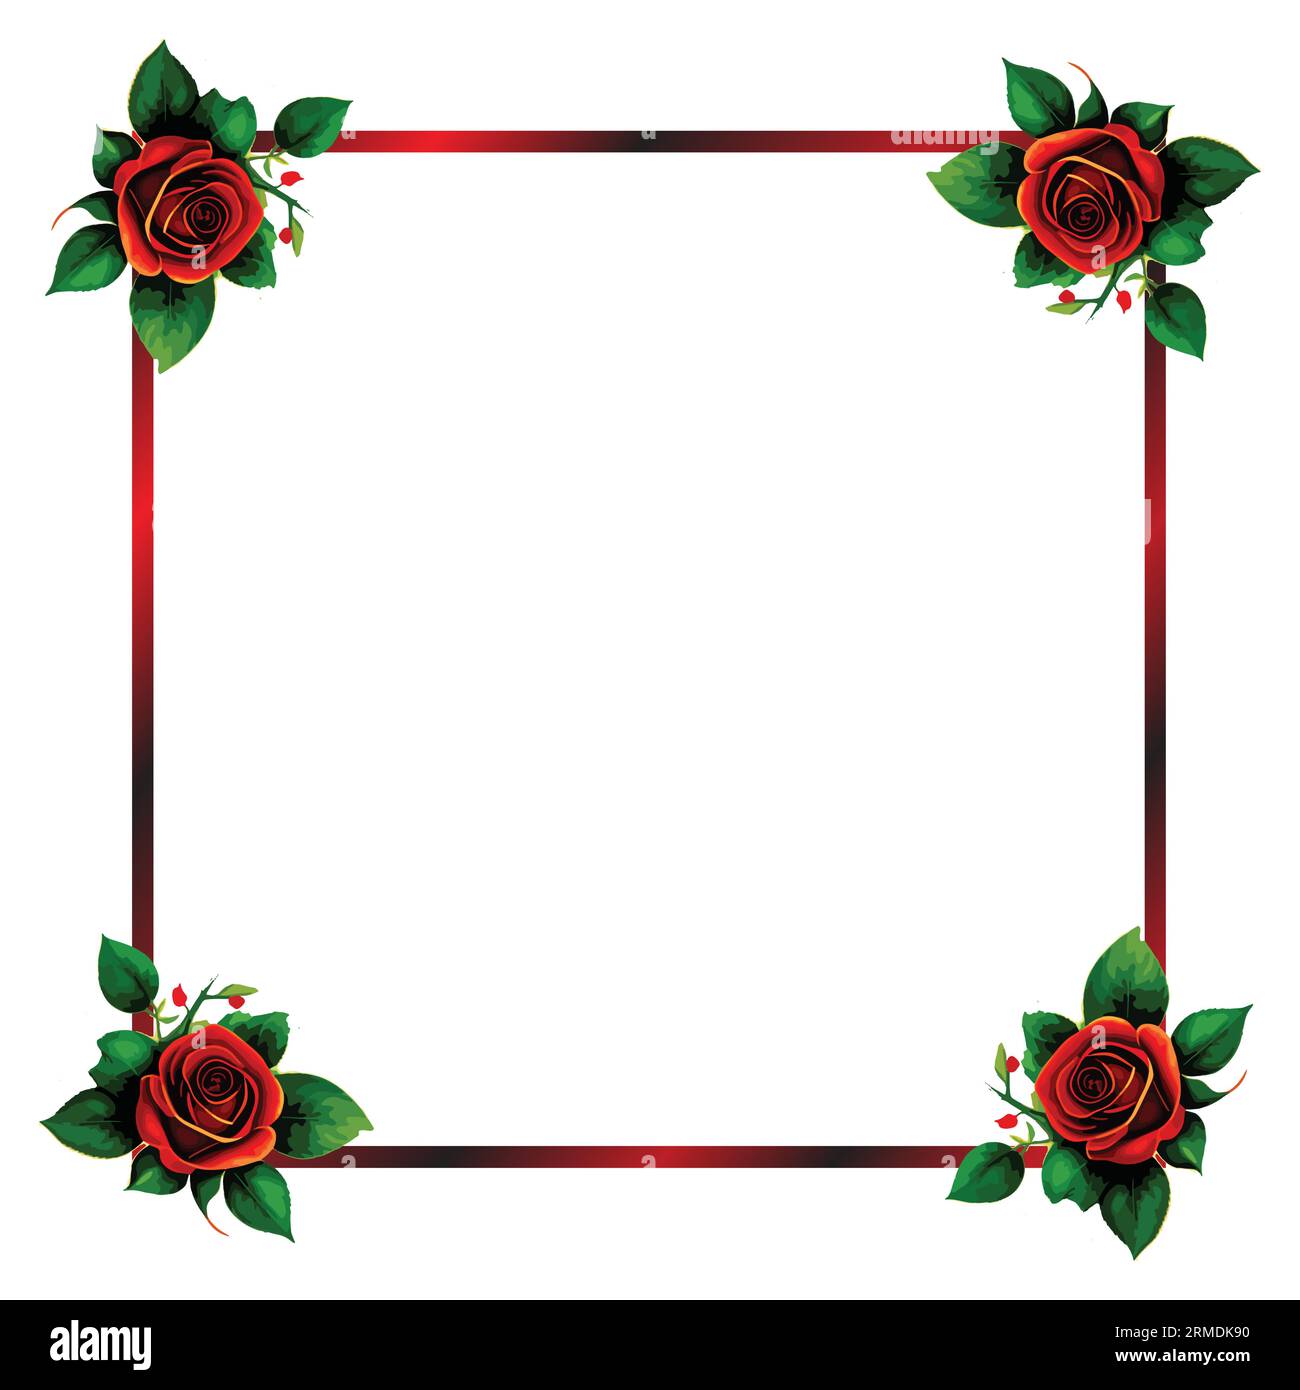 floral frame border vector Stock Vector